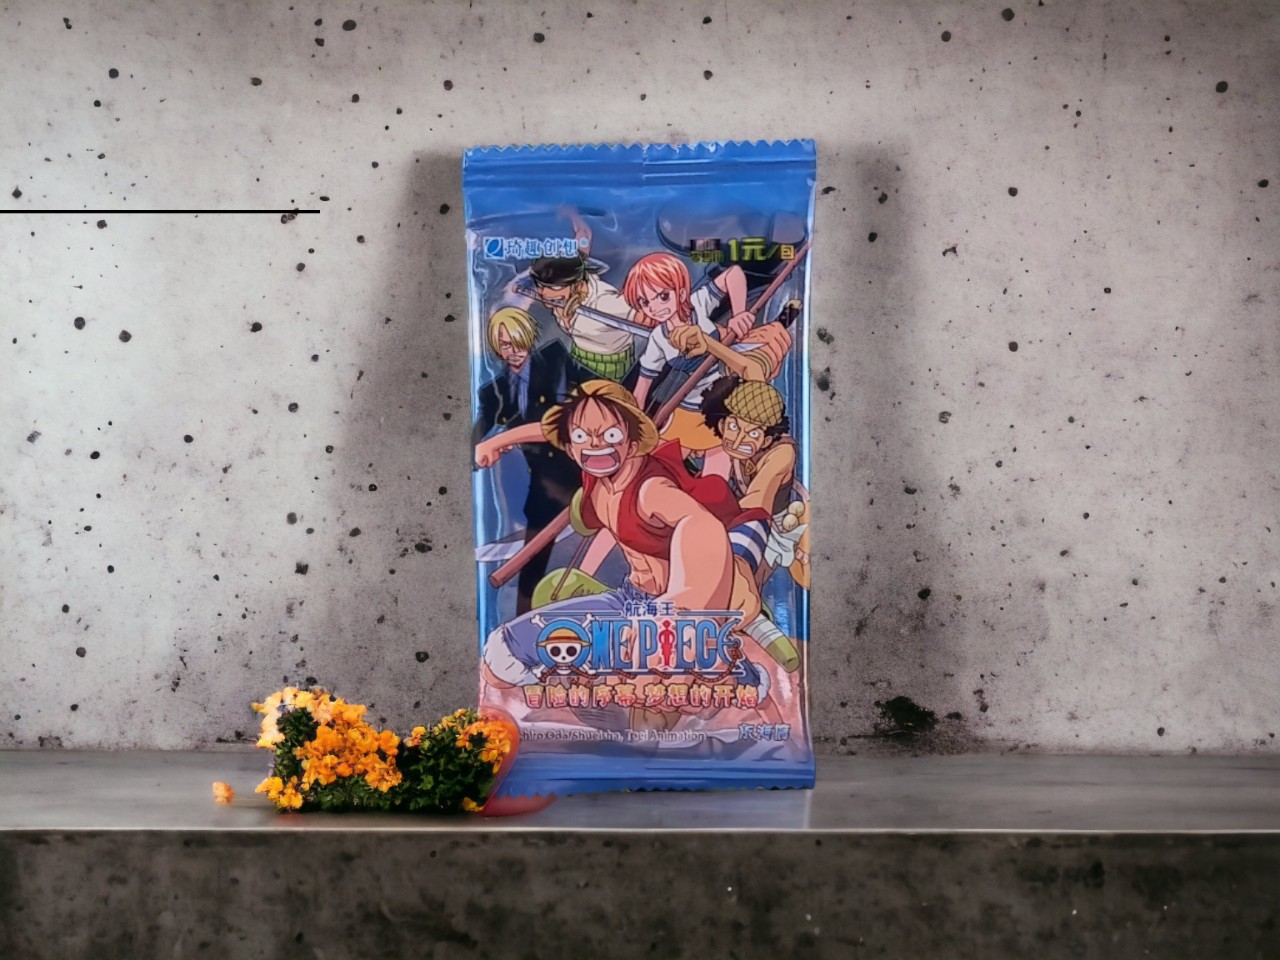 (FULL BOX) Hộp Thẻ Bài Anime One Piece ảnh thẻ nhân phẩm giá rẻ ( hộp 36 pack)